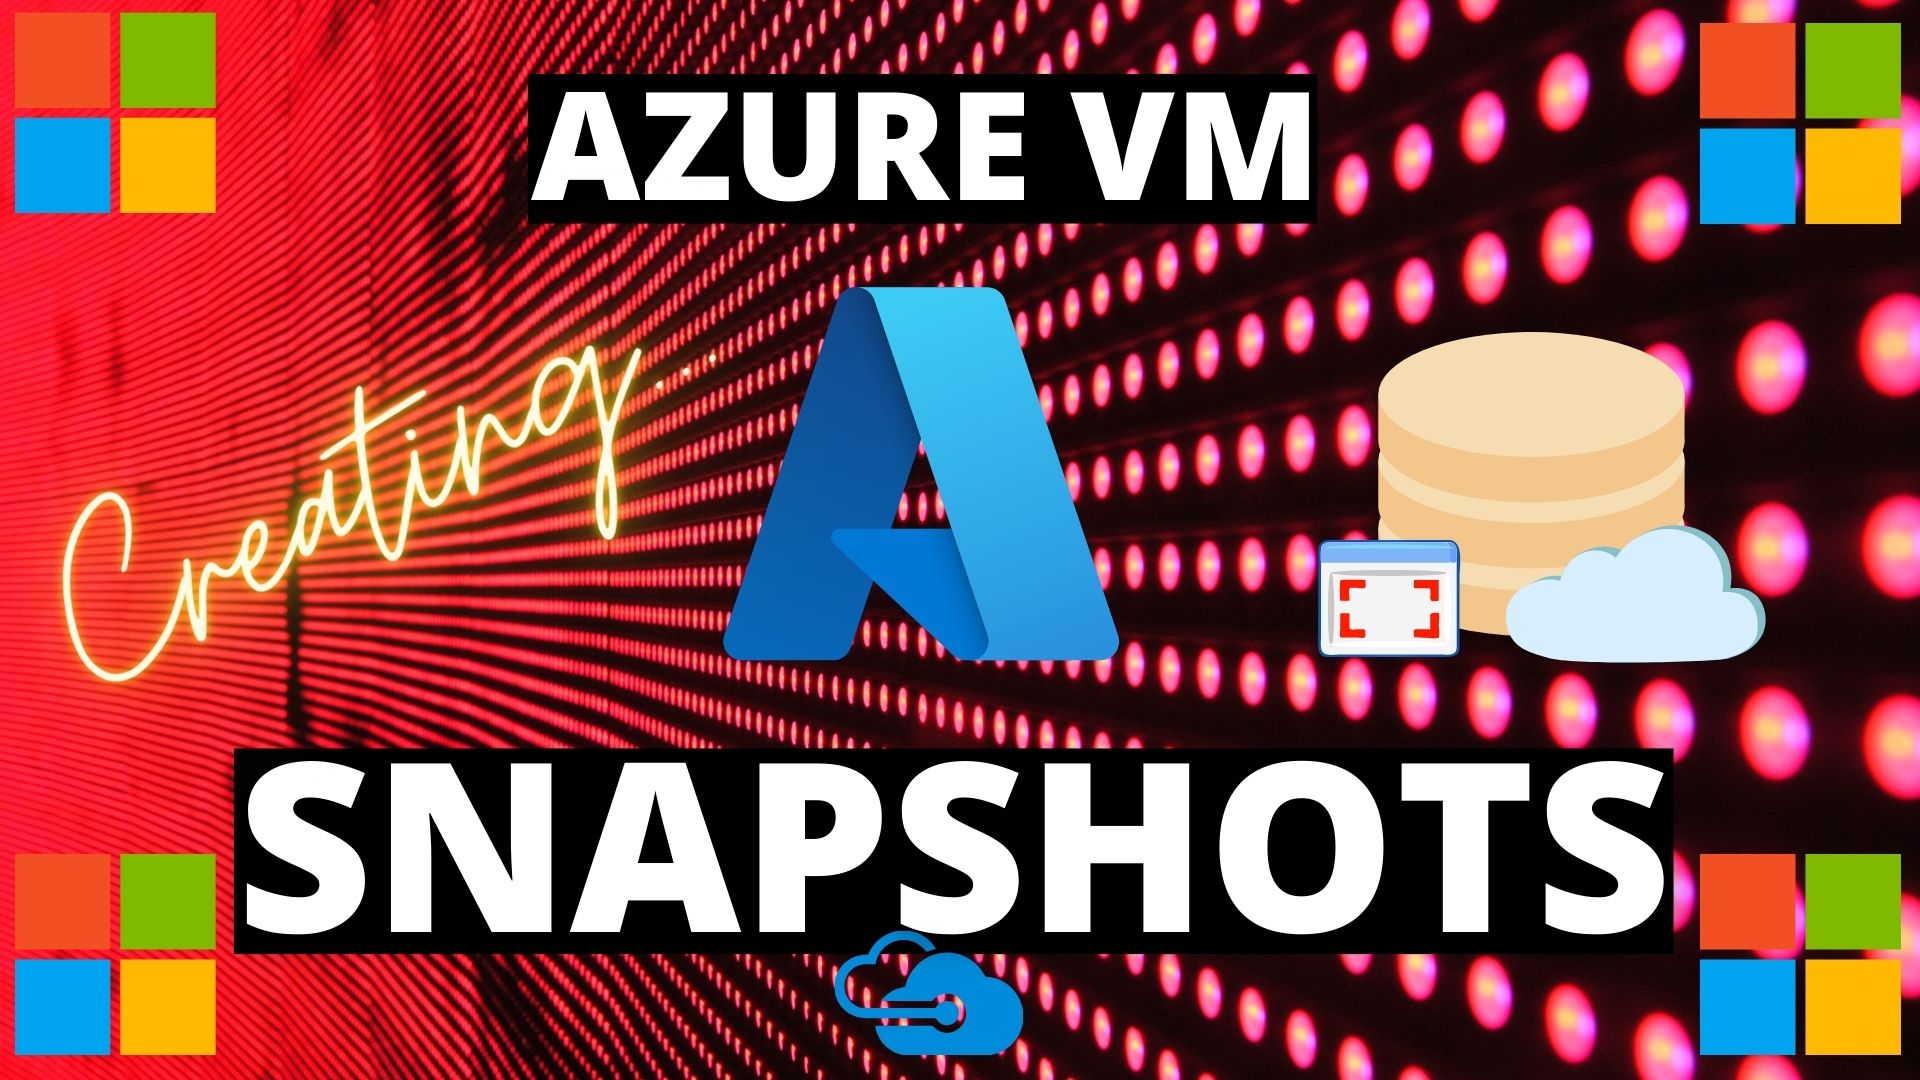 Azure VM Snapshot